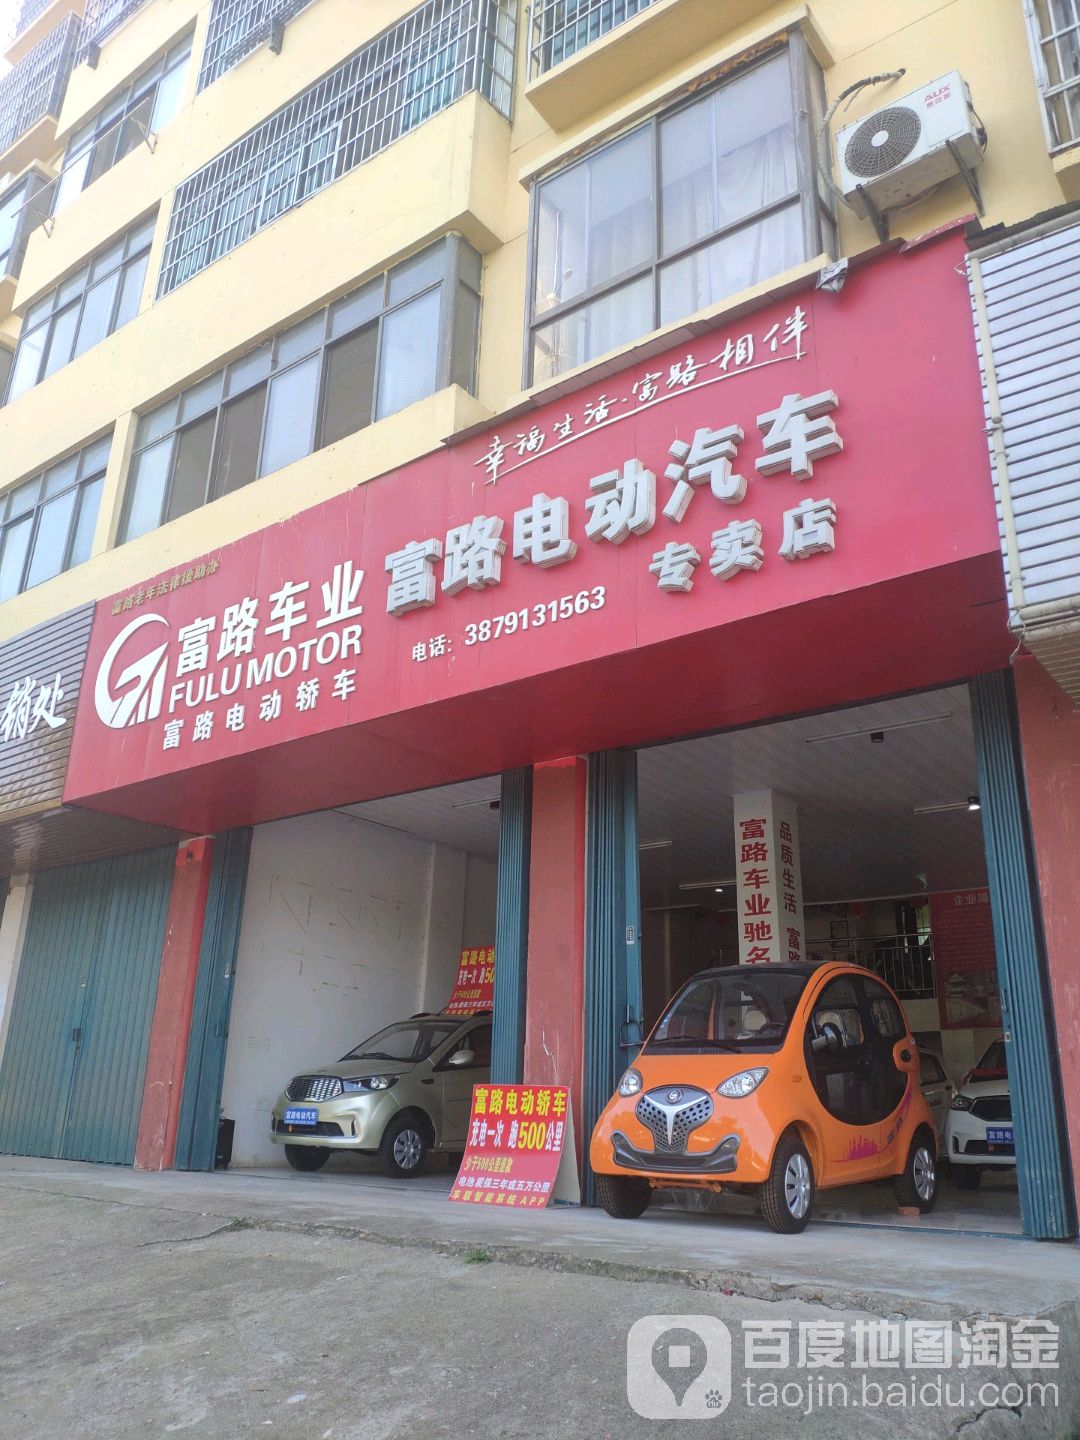 富路電動汽車專賣店(802鄉道店)